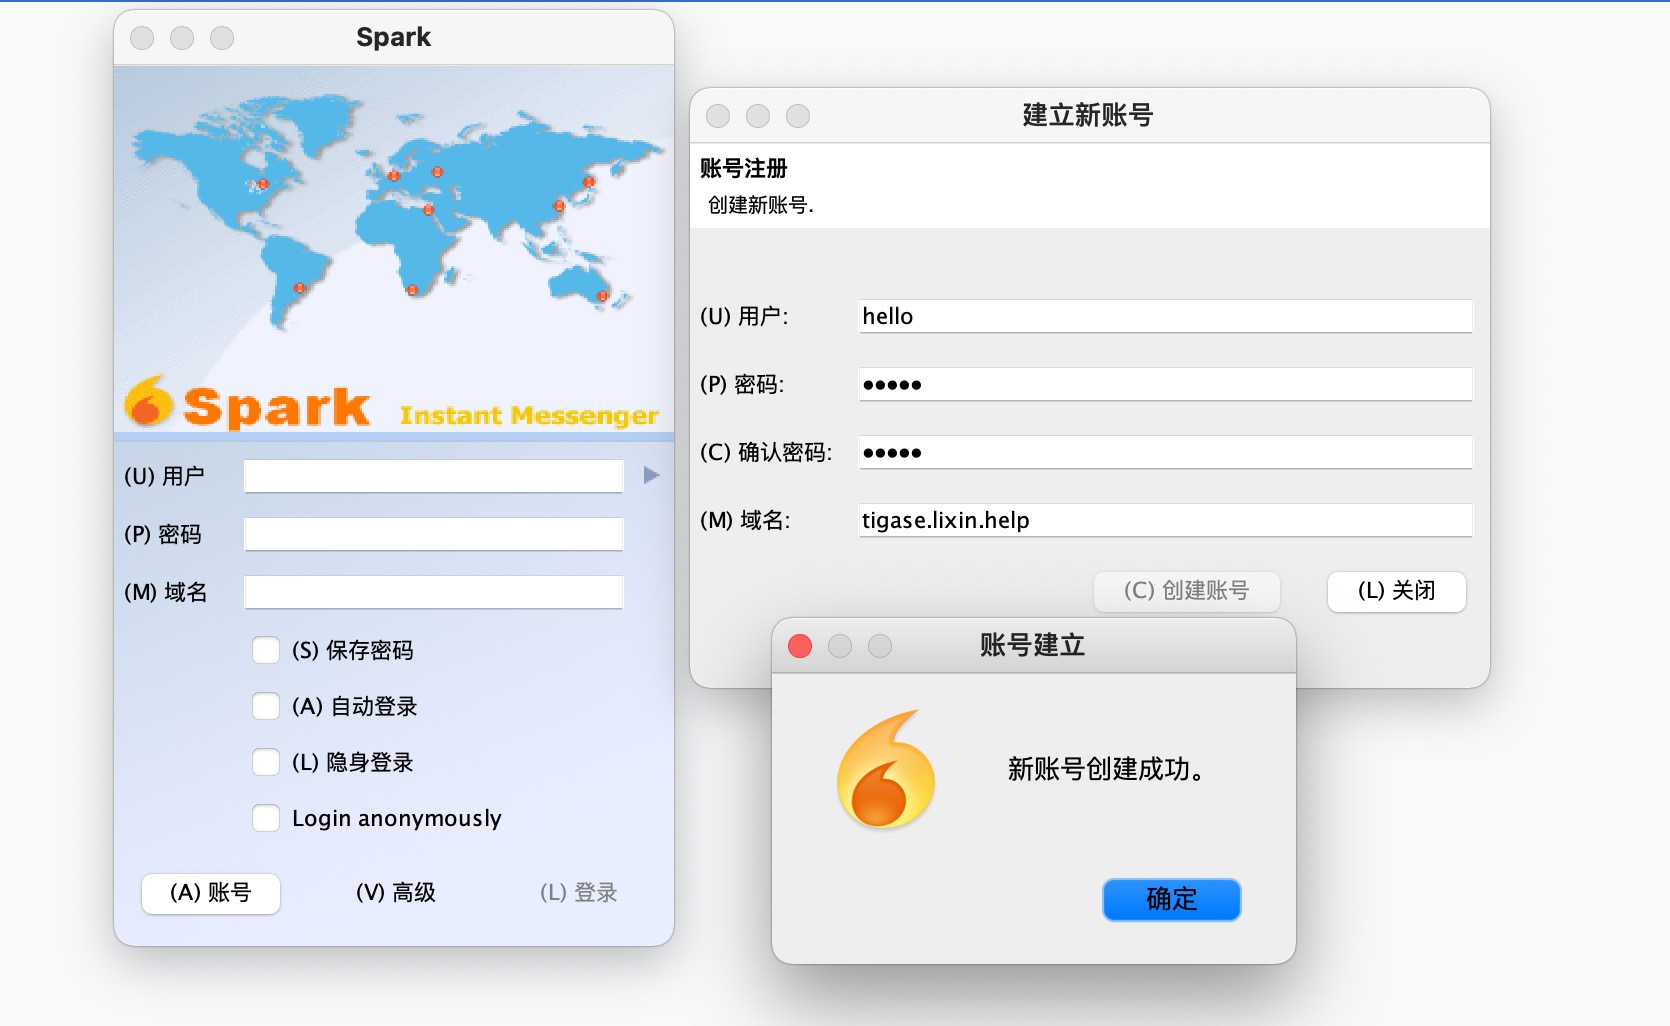 "Spark创建用户"